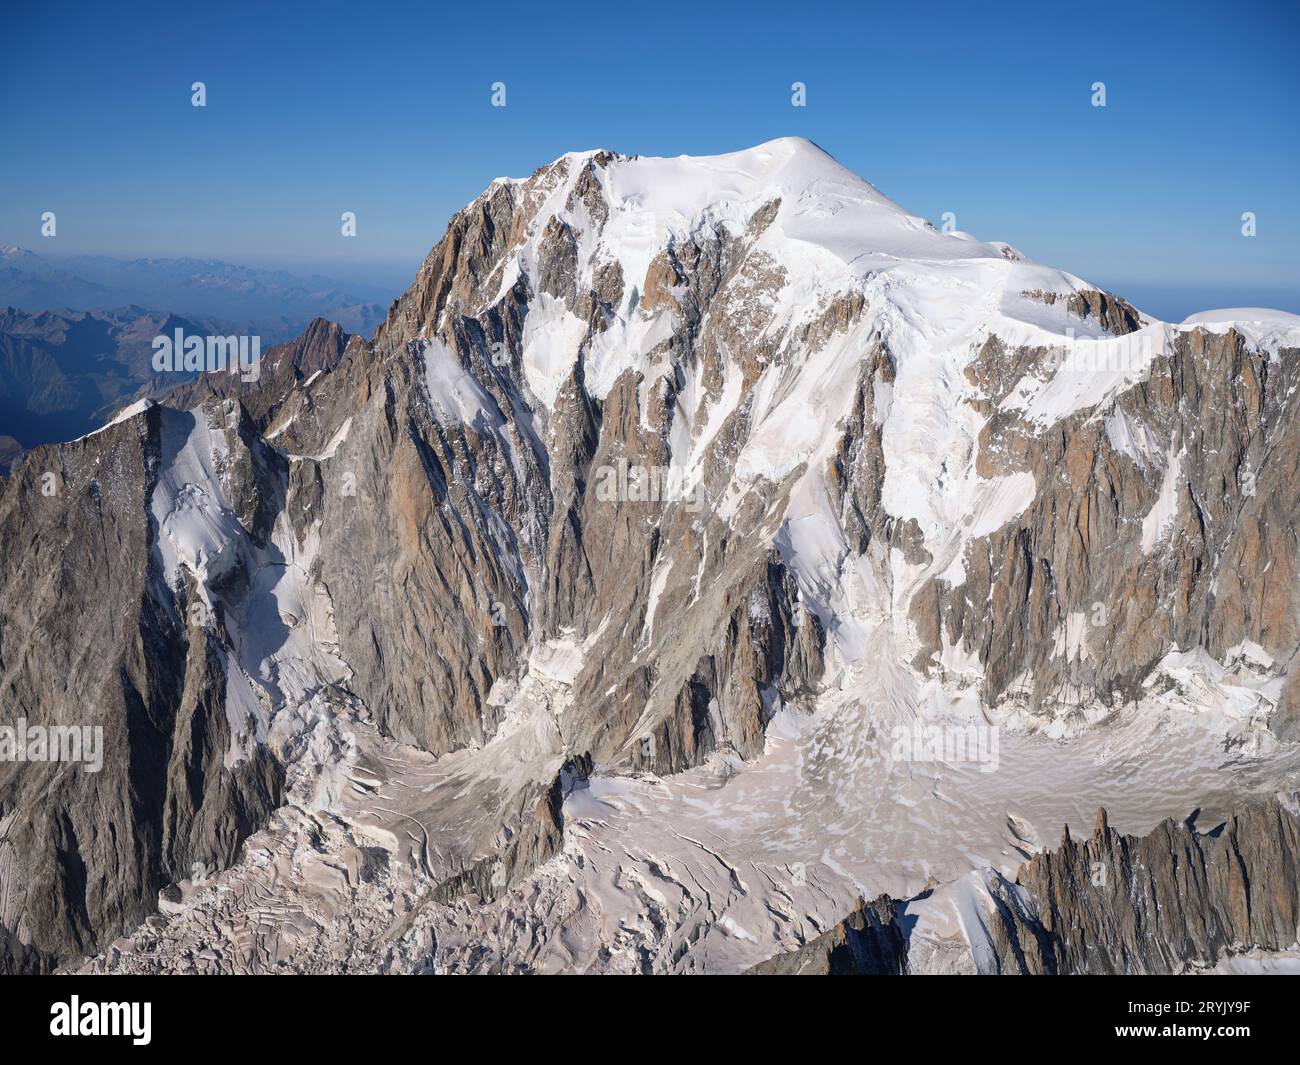 LUFTAUFNAHME. Italienische Seite des Mont Blanc mit dem Brenva-Gletscher. Courmayeur, Aostatal, Italien. Stockfoto